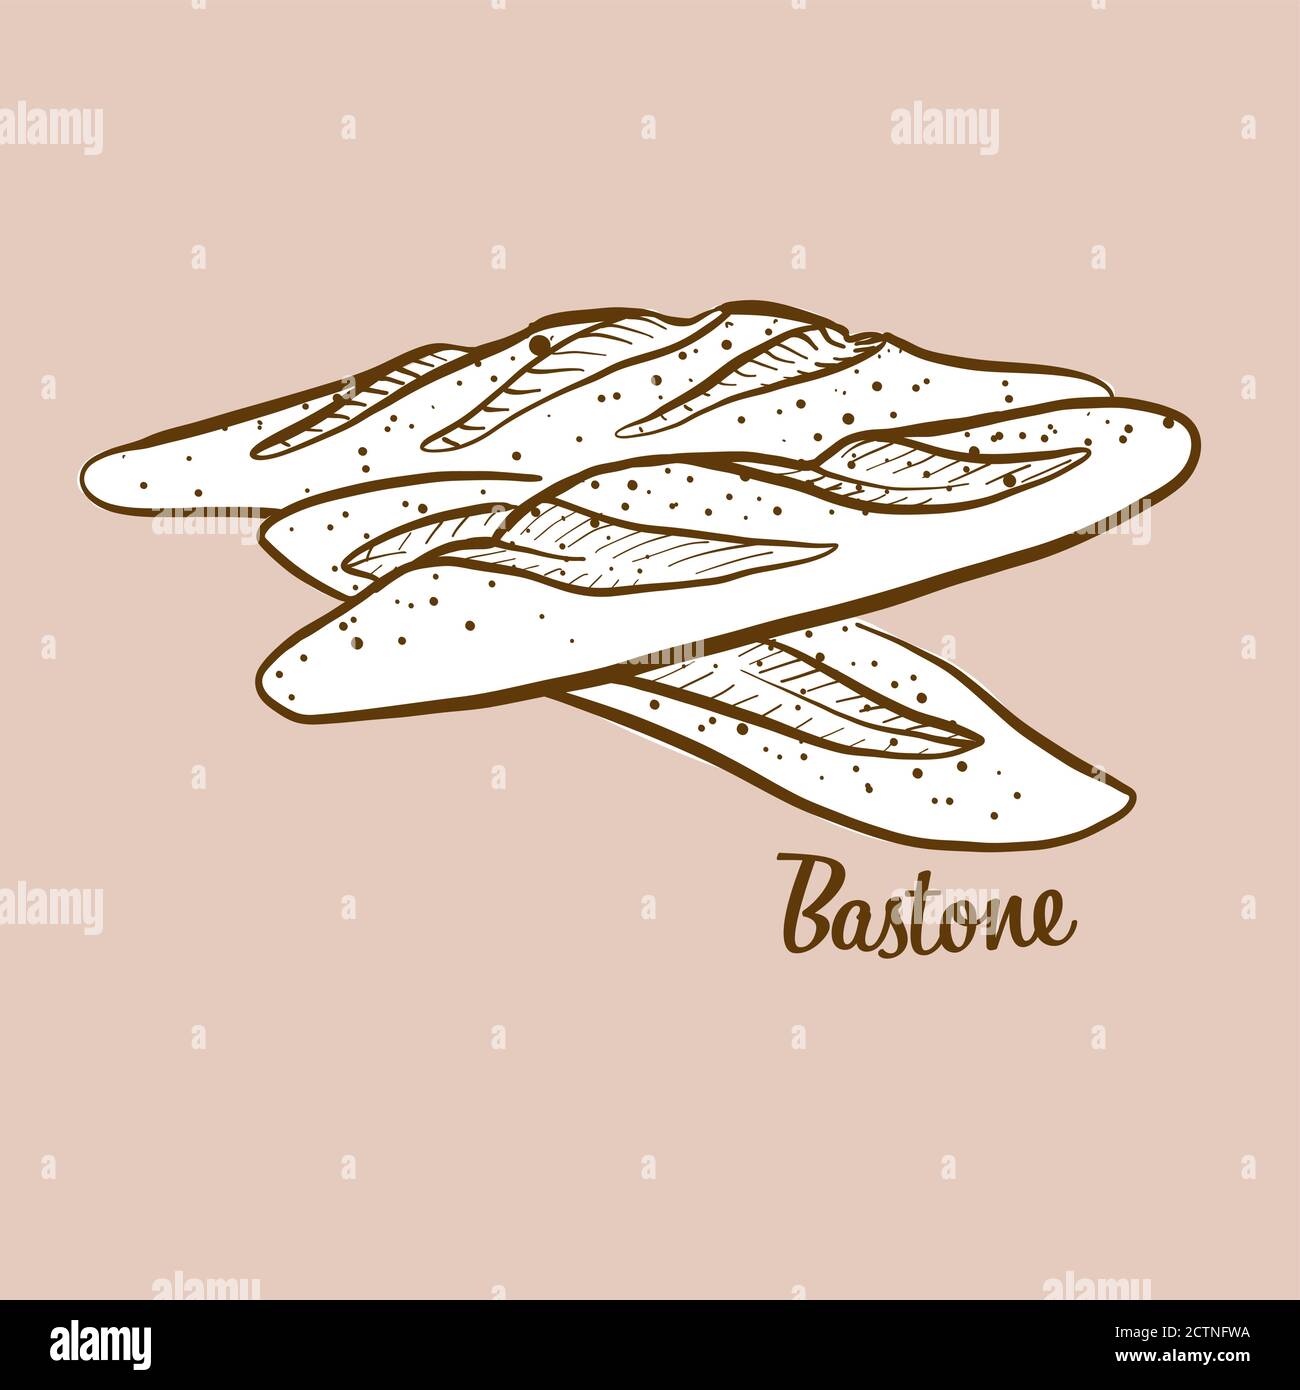 Illustration de pain Bastone dessiné à la main. Pain de levure, généralement connu en Italie. Série de mises en plan vectorielles. Illustration de Vecteur